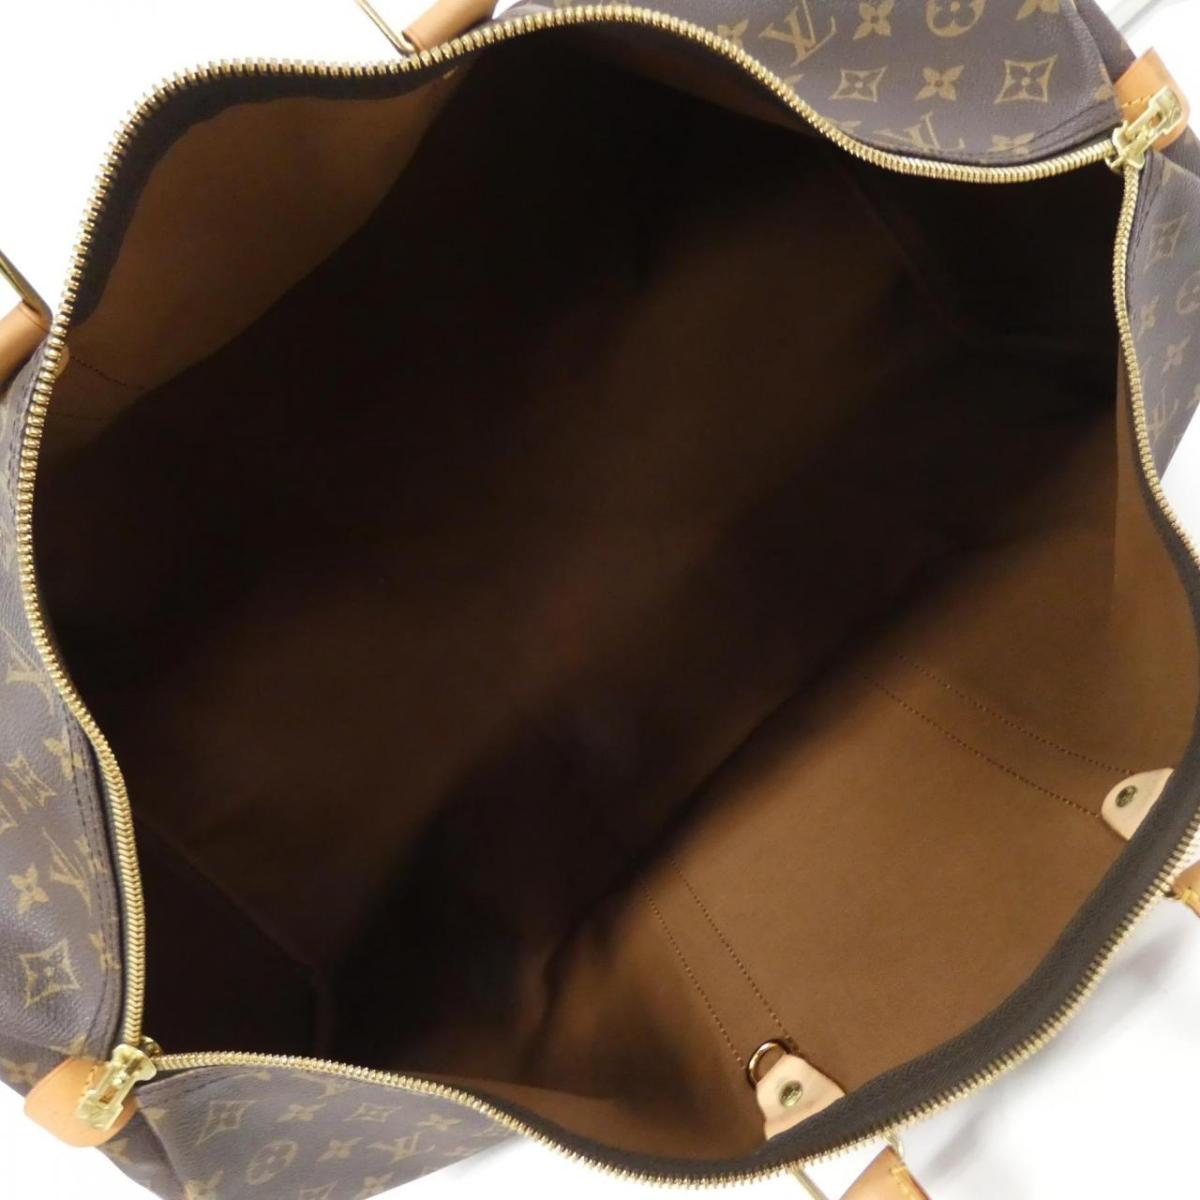 Louis Vuitton M41422 Monogram Box 60cm M41422 Boston Bag